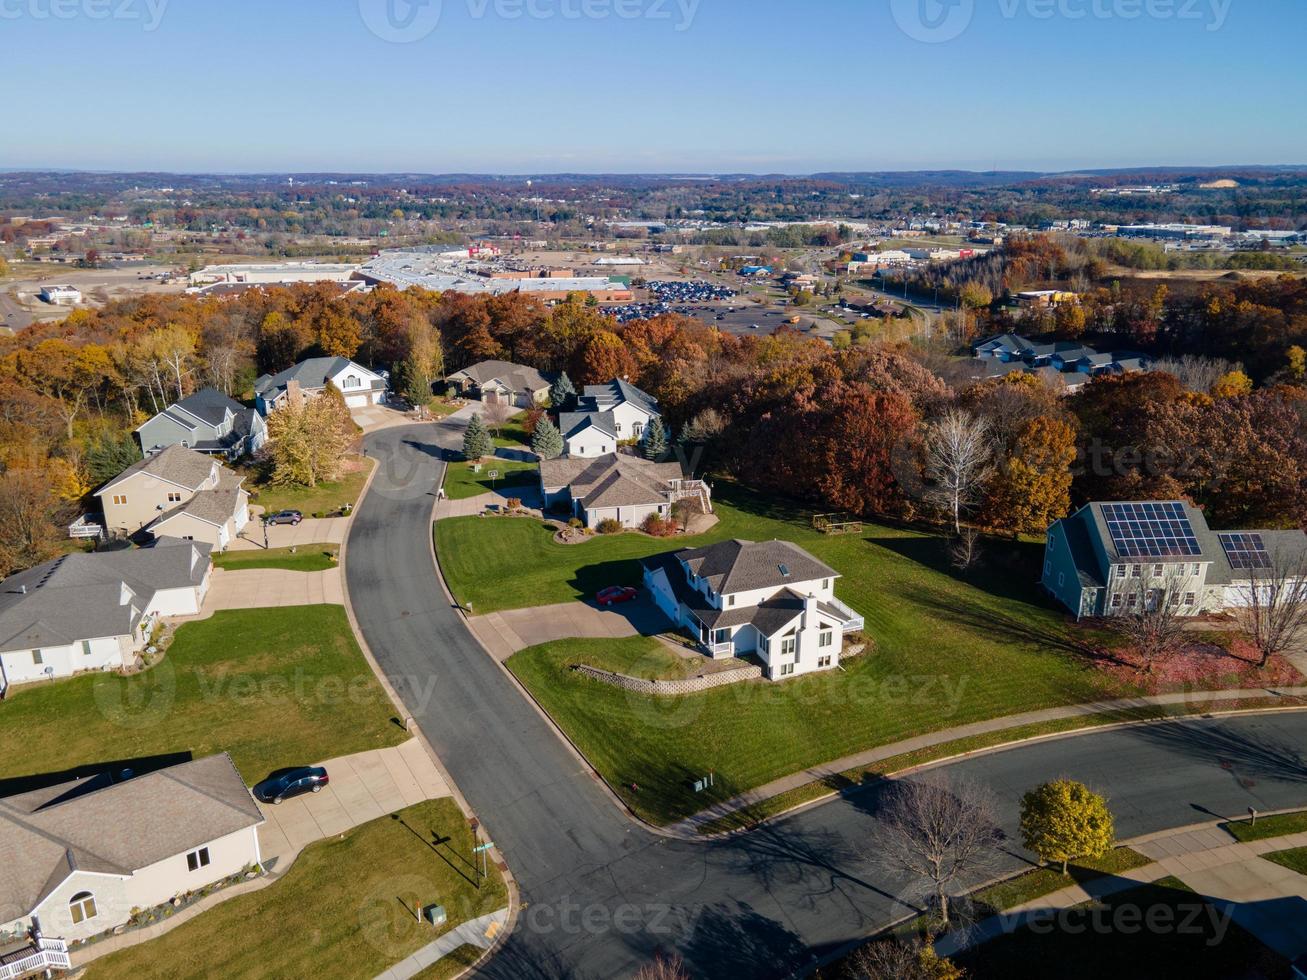 área residencial mais recente em eau claire, Wisconsin. grandes casas com grandes jardins verdes. cores brilhantes de outono vistas na paisagem circundante. estradas largas, calçadas e calçadas. foto